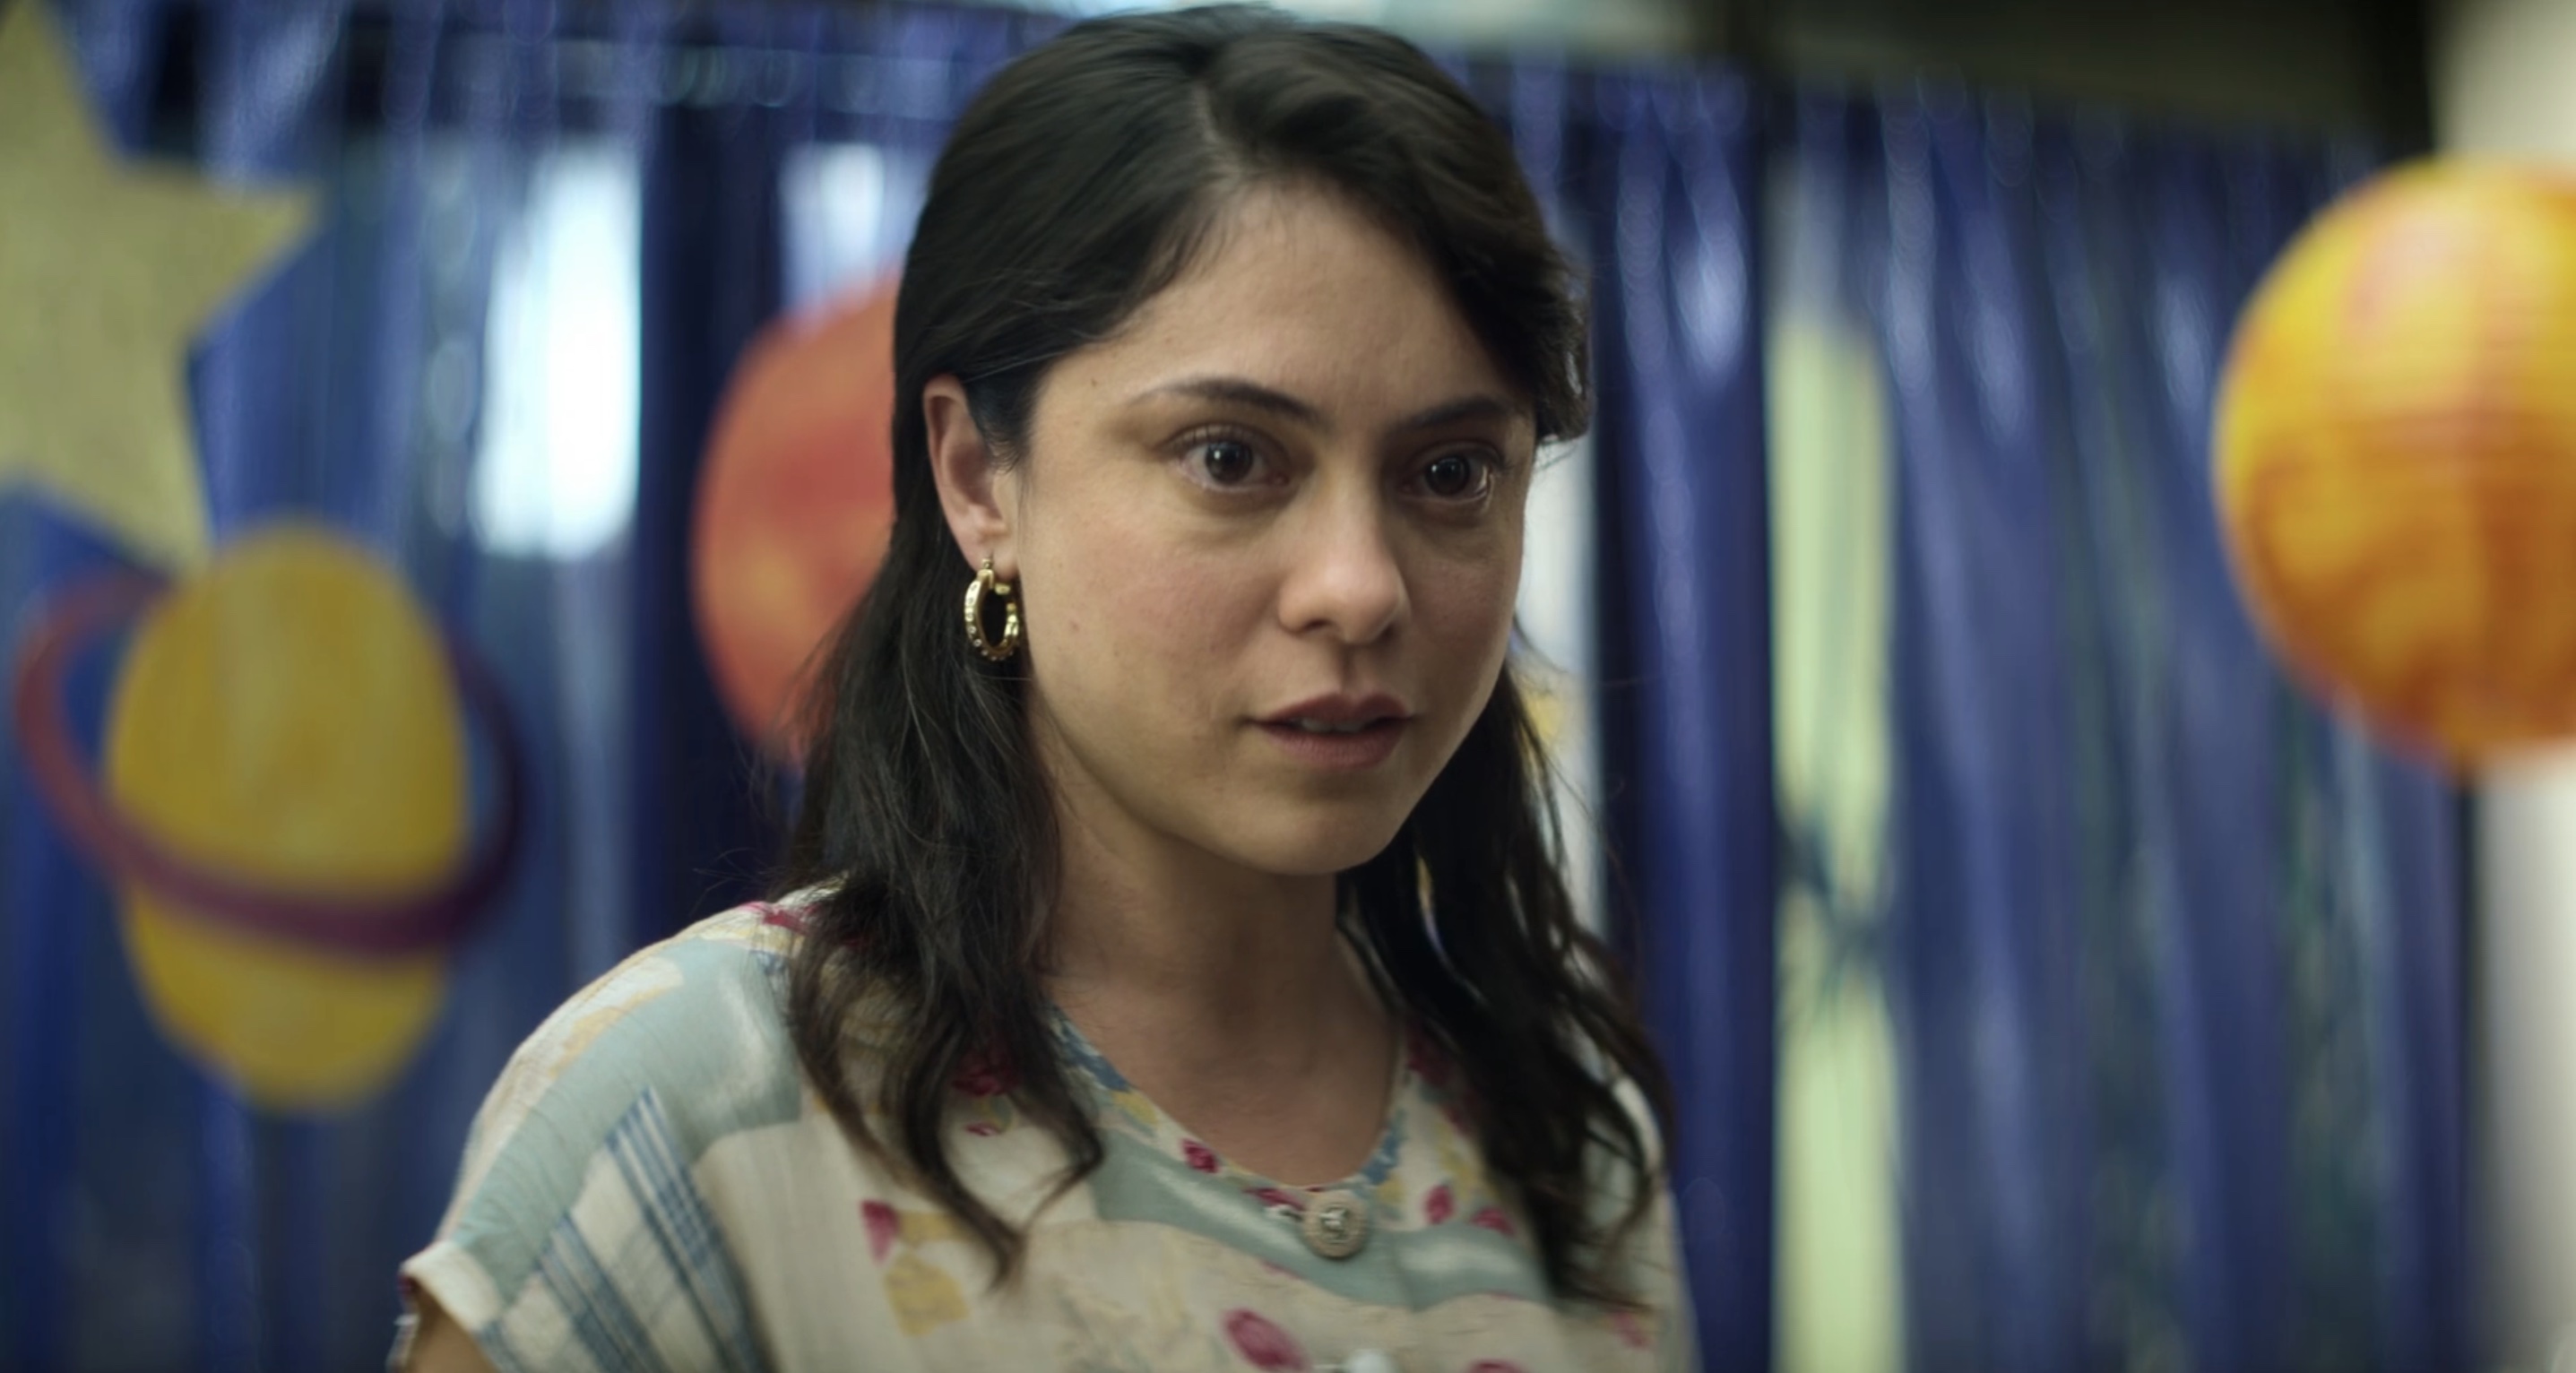 A Million Miles Away Cast on Amazon - Rosa Salazar as Adela